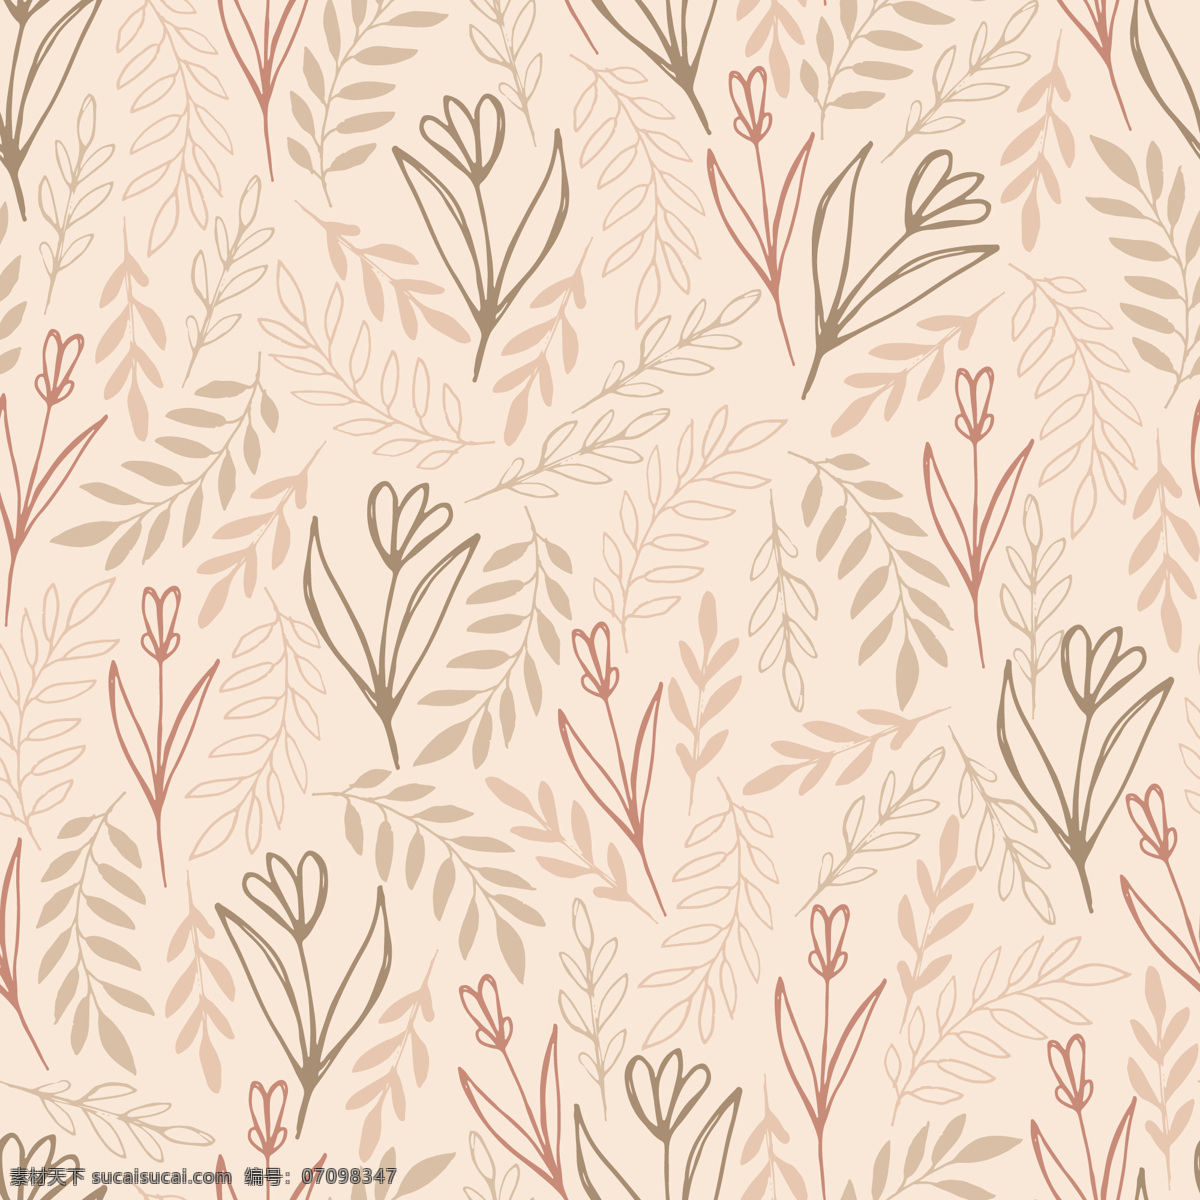 日 系 清新 肉粉 底色 壁纸 图案 装饰设计 树叶 花朵 小树苗 壁纸图案